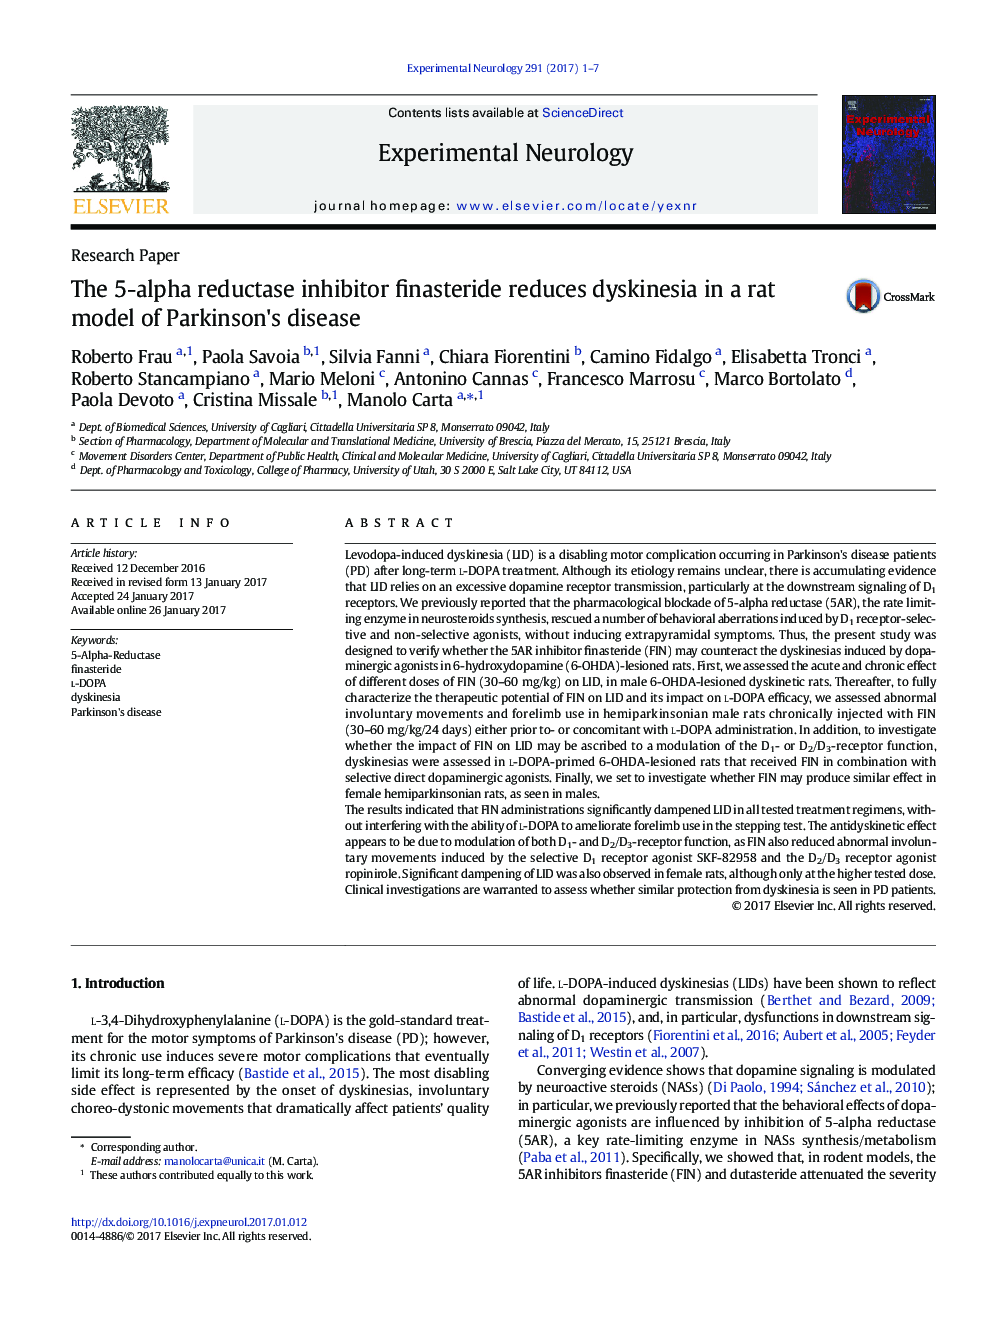 مقاله پژوهشی فیناستراید مهارکننده 5-آلفا ردوکتاز باعث کاهش دیسکینزی در یک مدل موش صحرایی از بیماری پارکینسون می شود. 